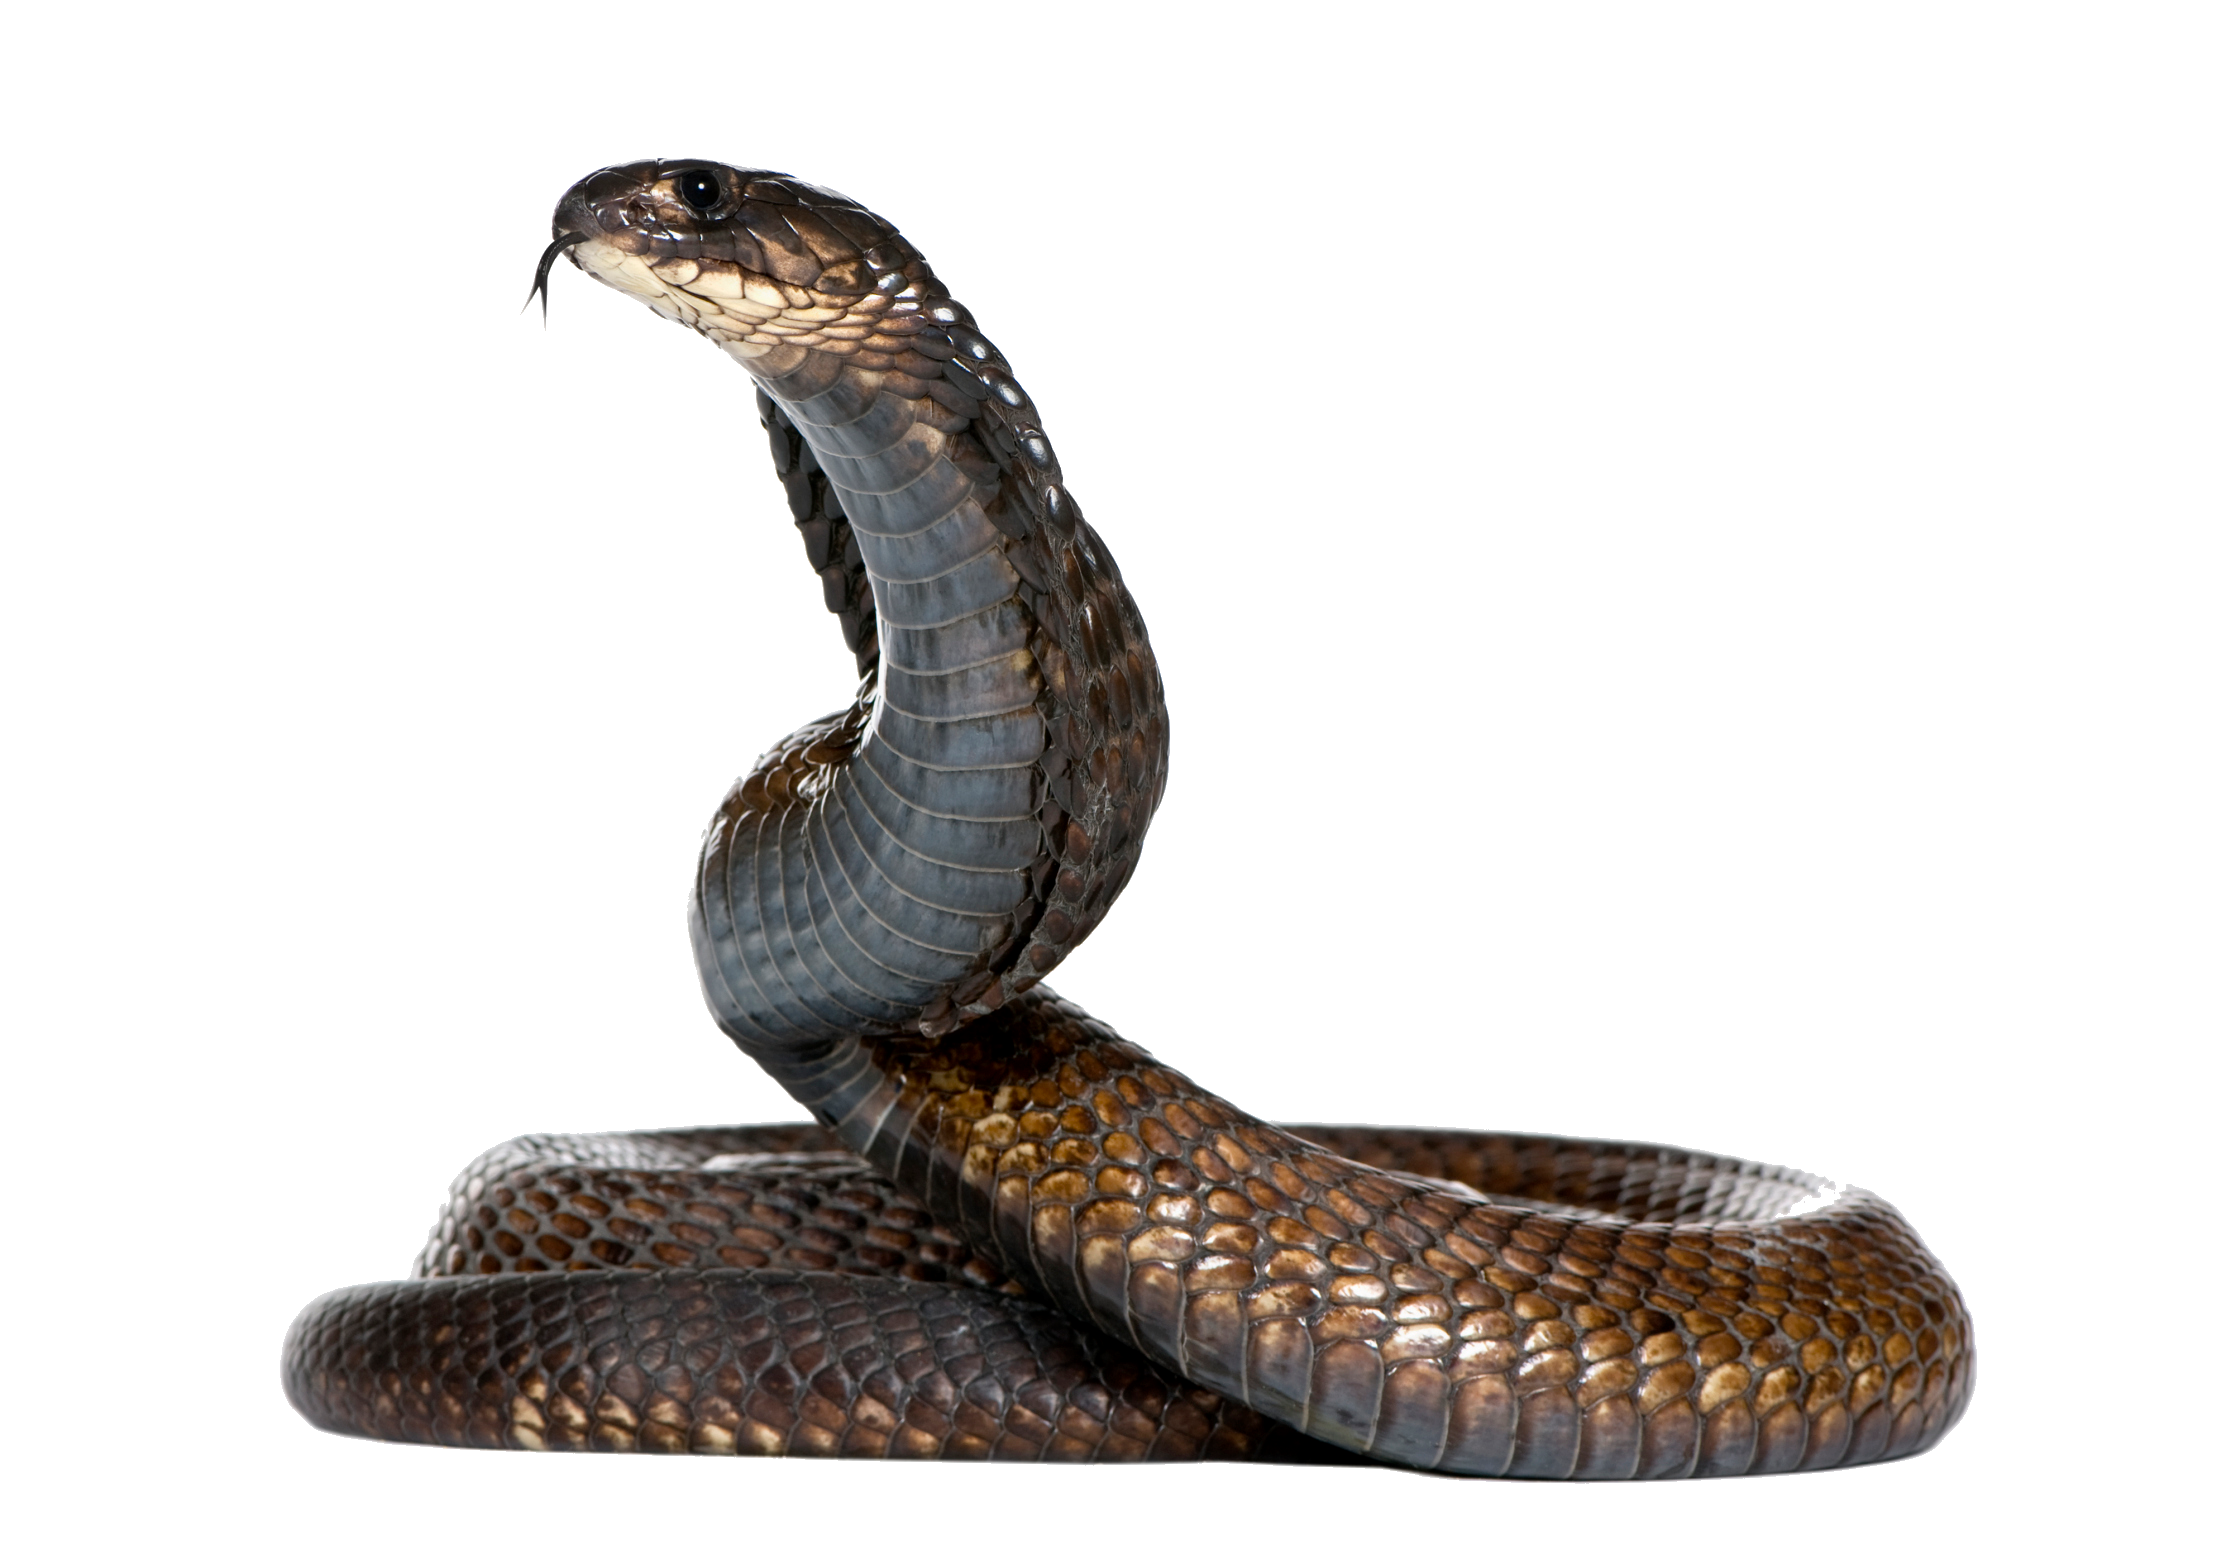 Black Snake Image PNG Image